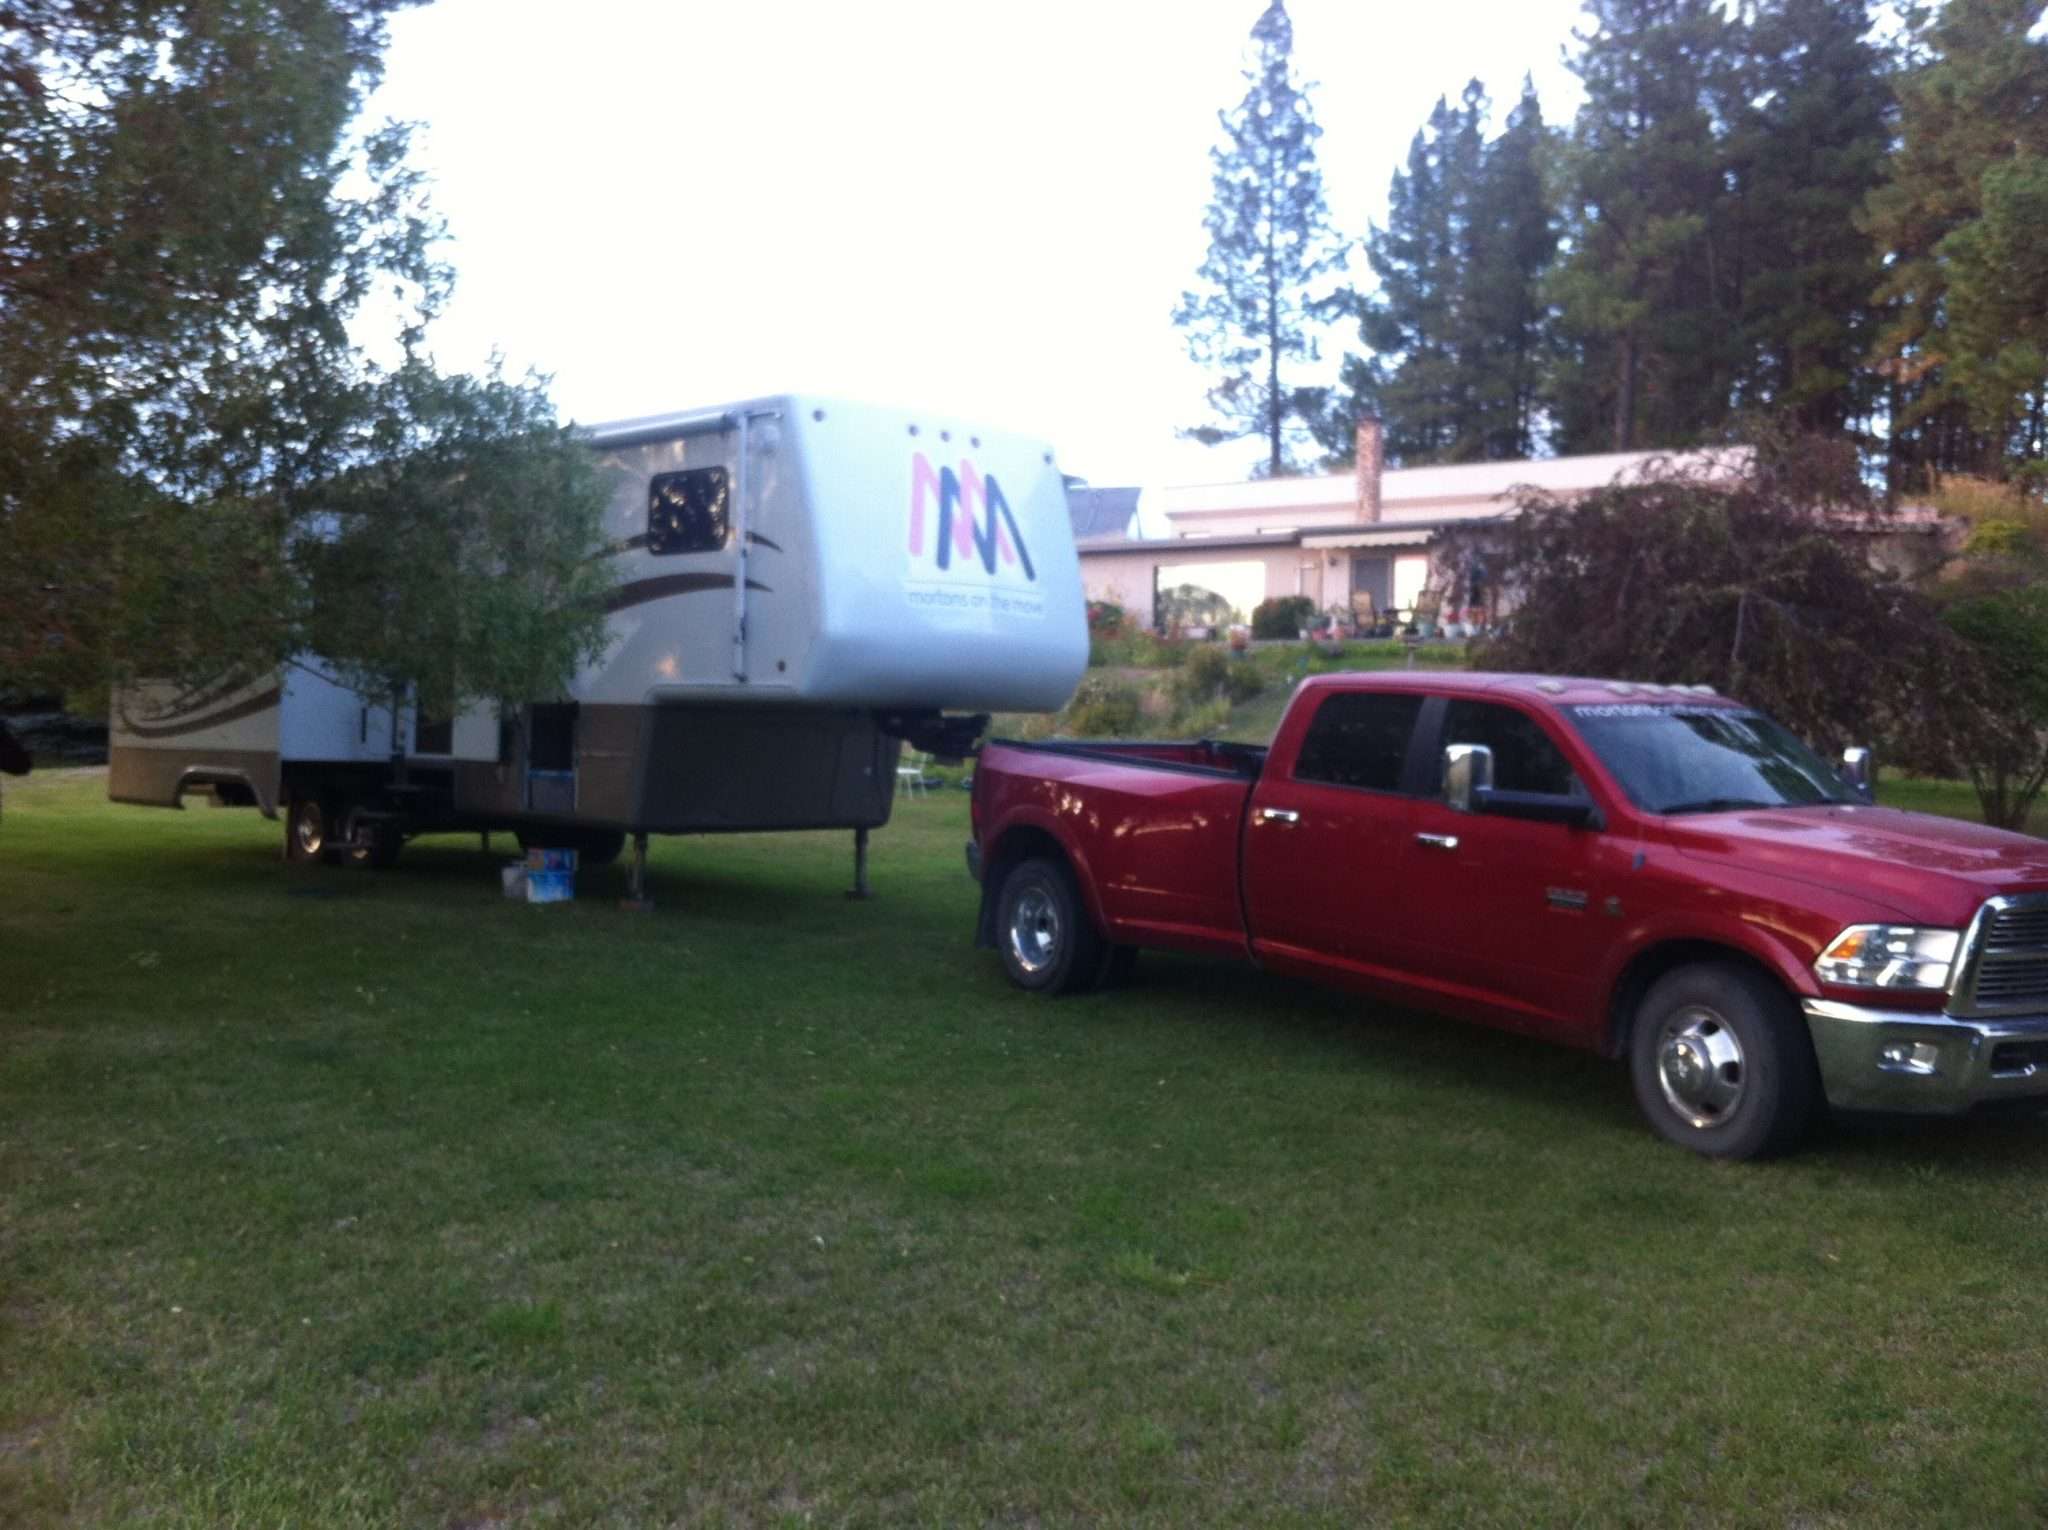 boondockers welcome campsite in montana